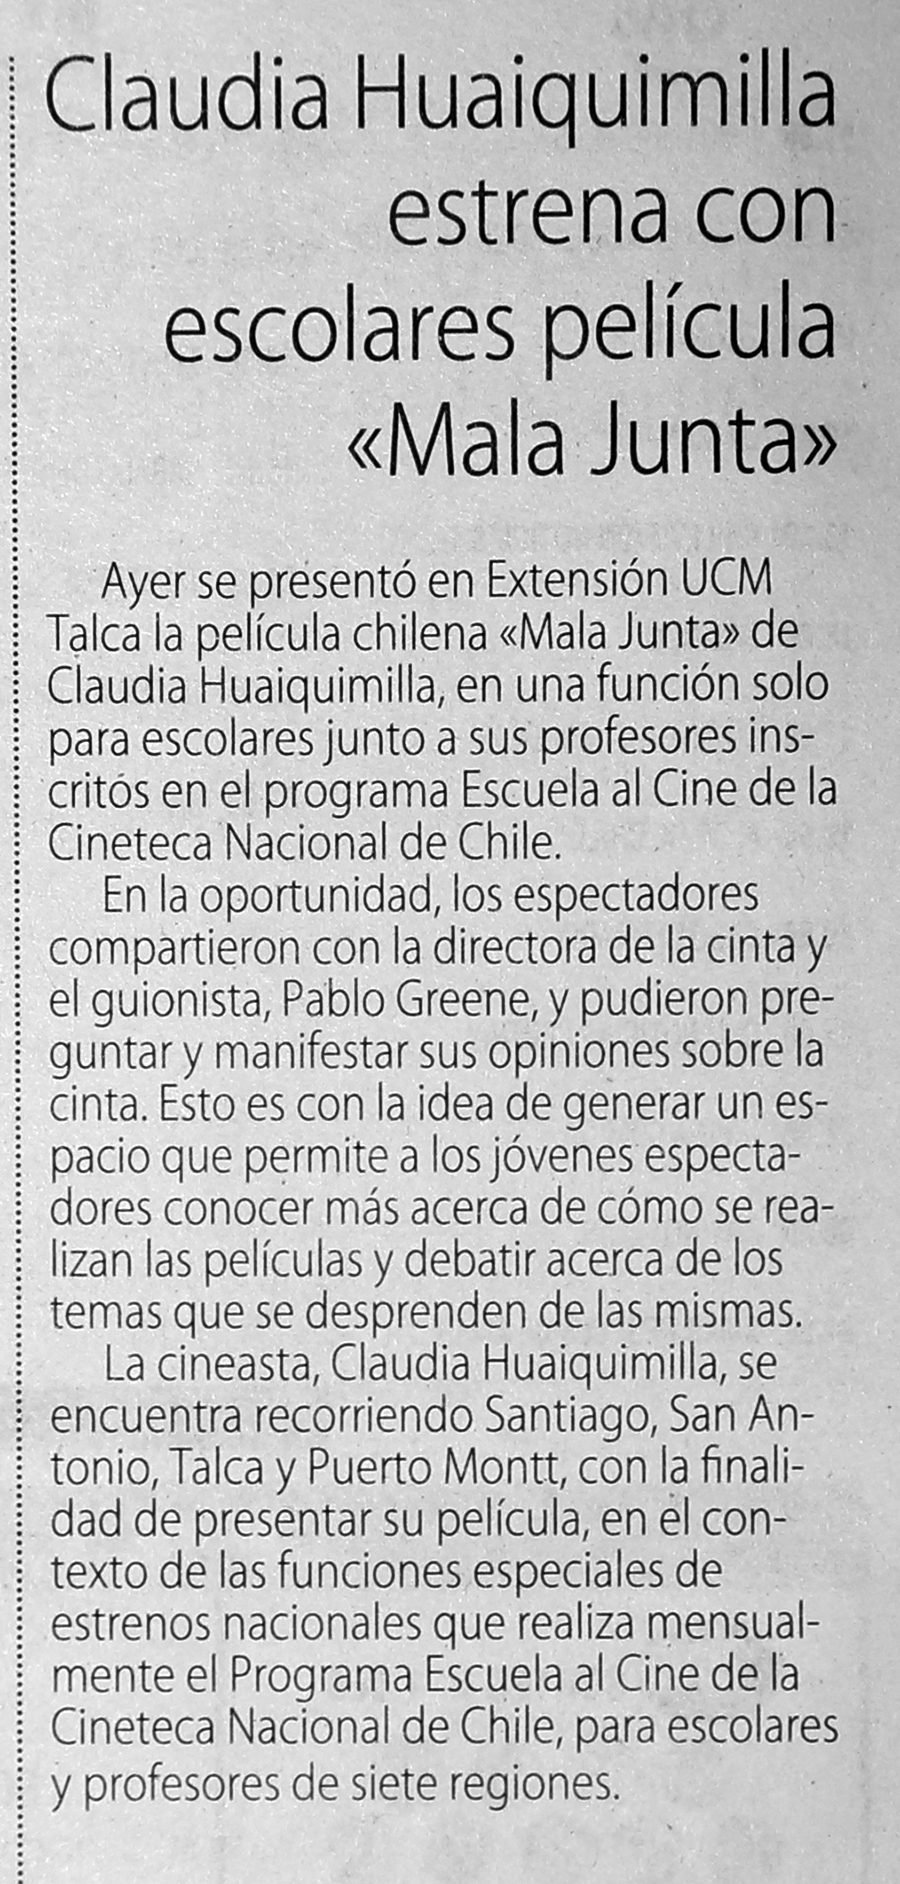 27 de mayo en Diario El Centro: “ClaudiaHuaiquimilla estrena con escolares película “Mala Junta”